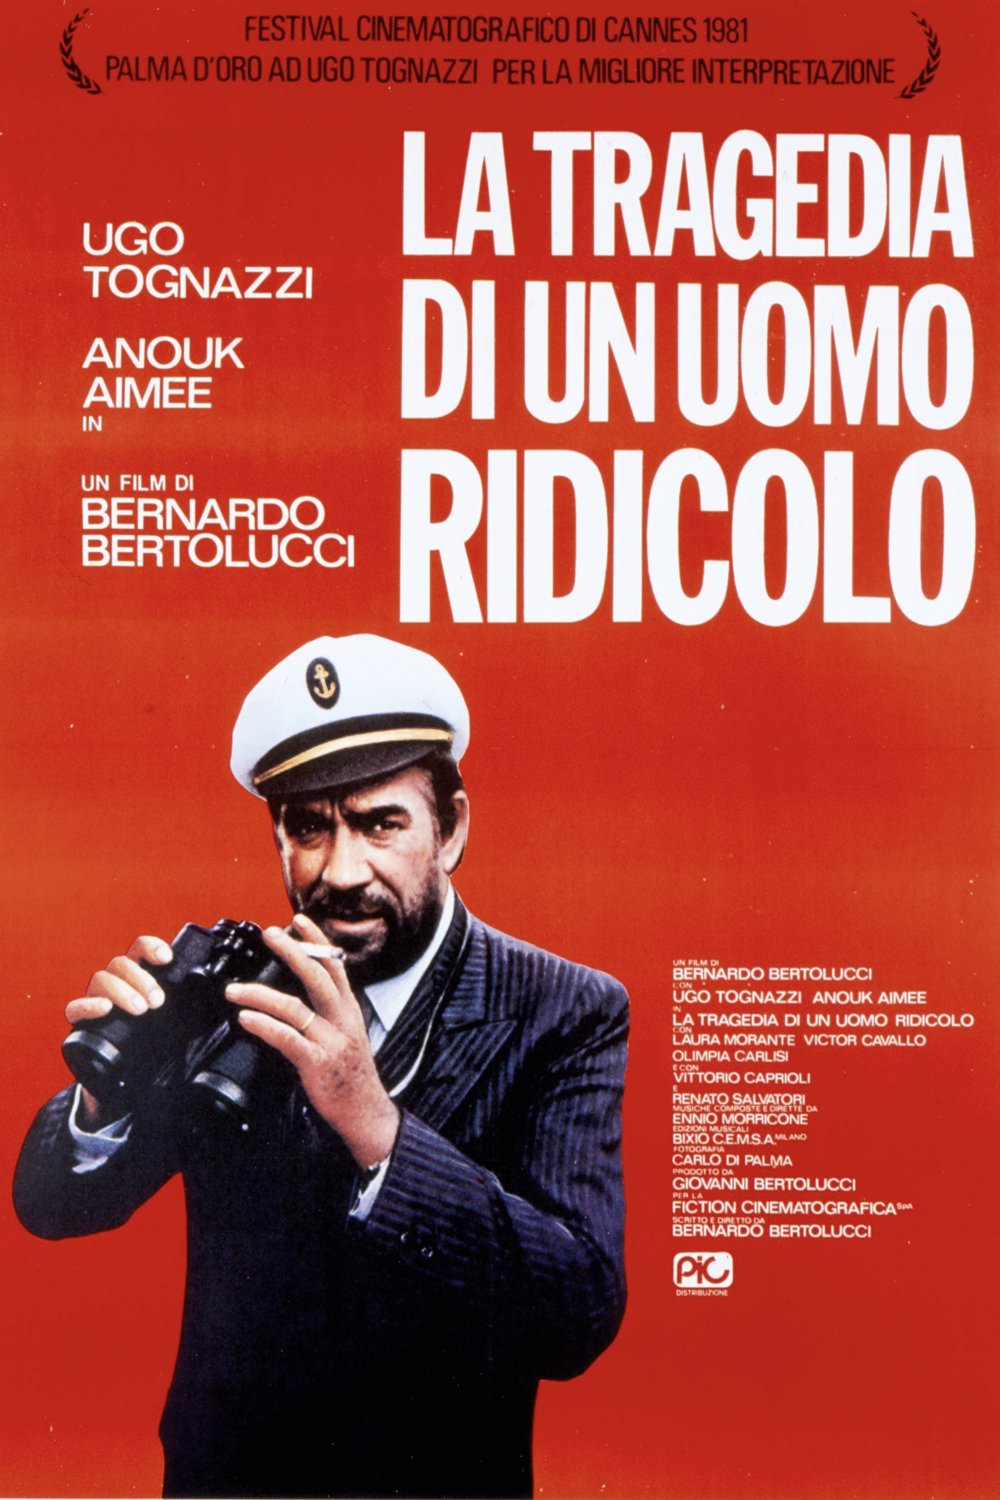 Italian poster of the movie La tragedia di un uomo ridicolo